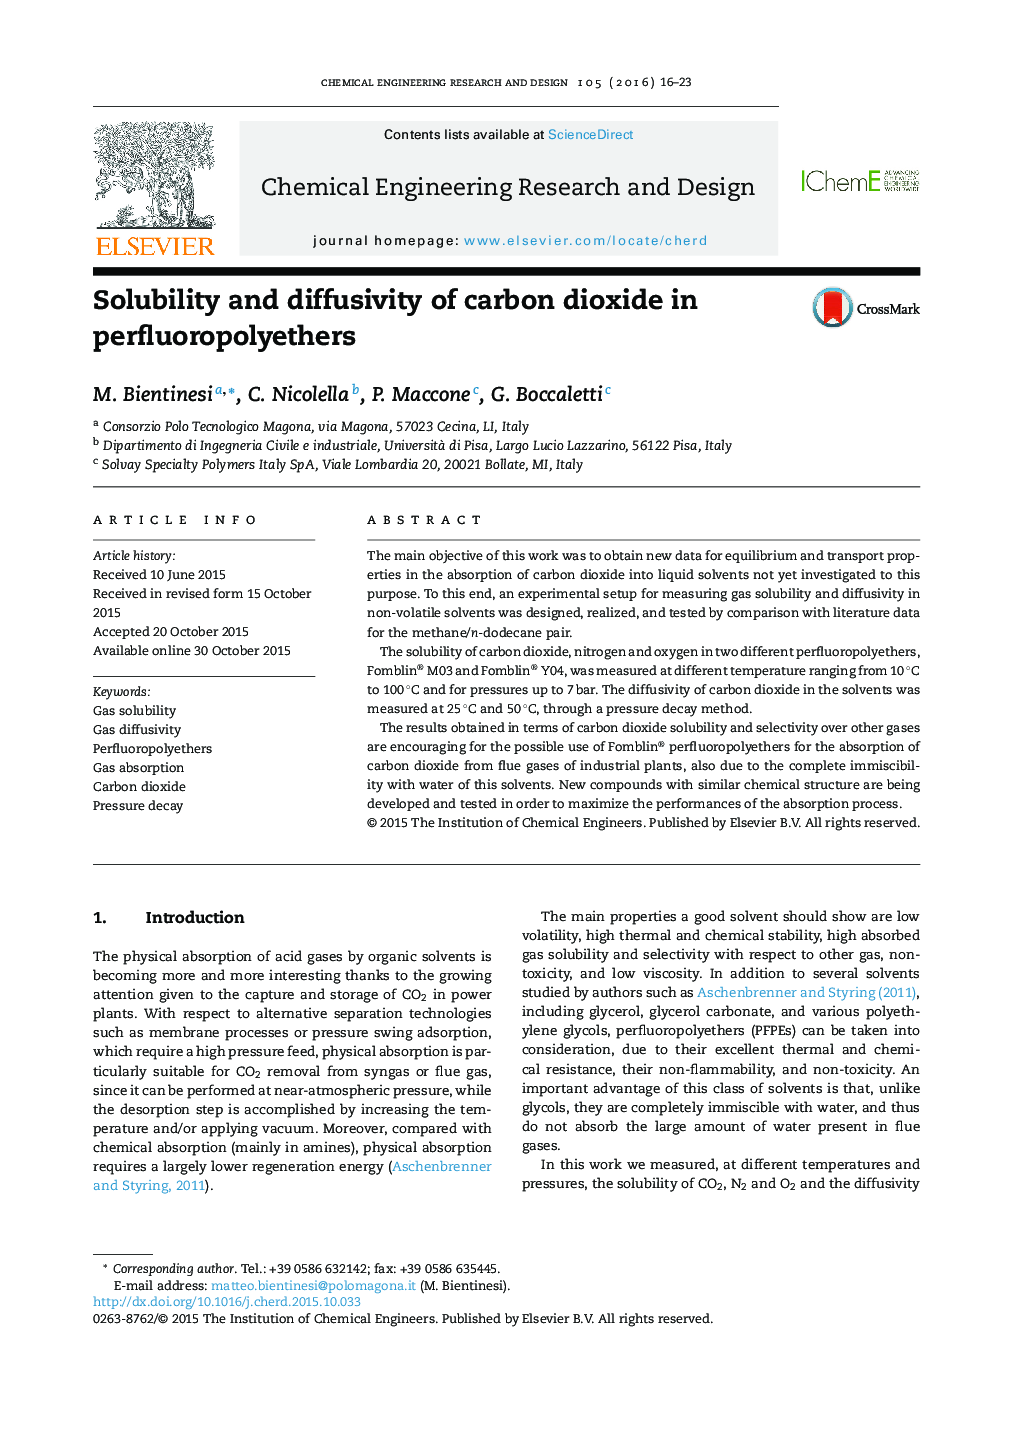 حلالیت و نفوذپذیری دی اکسید کربن در perfluoropolyethers